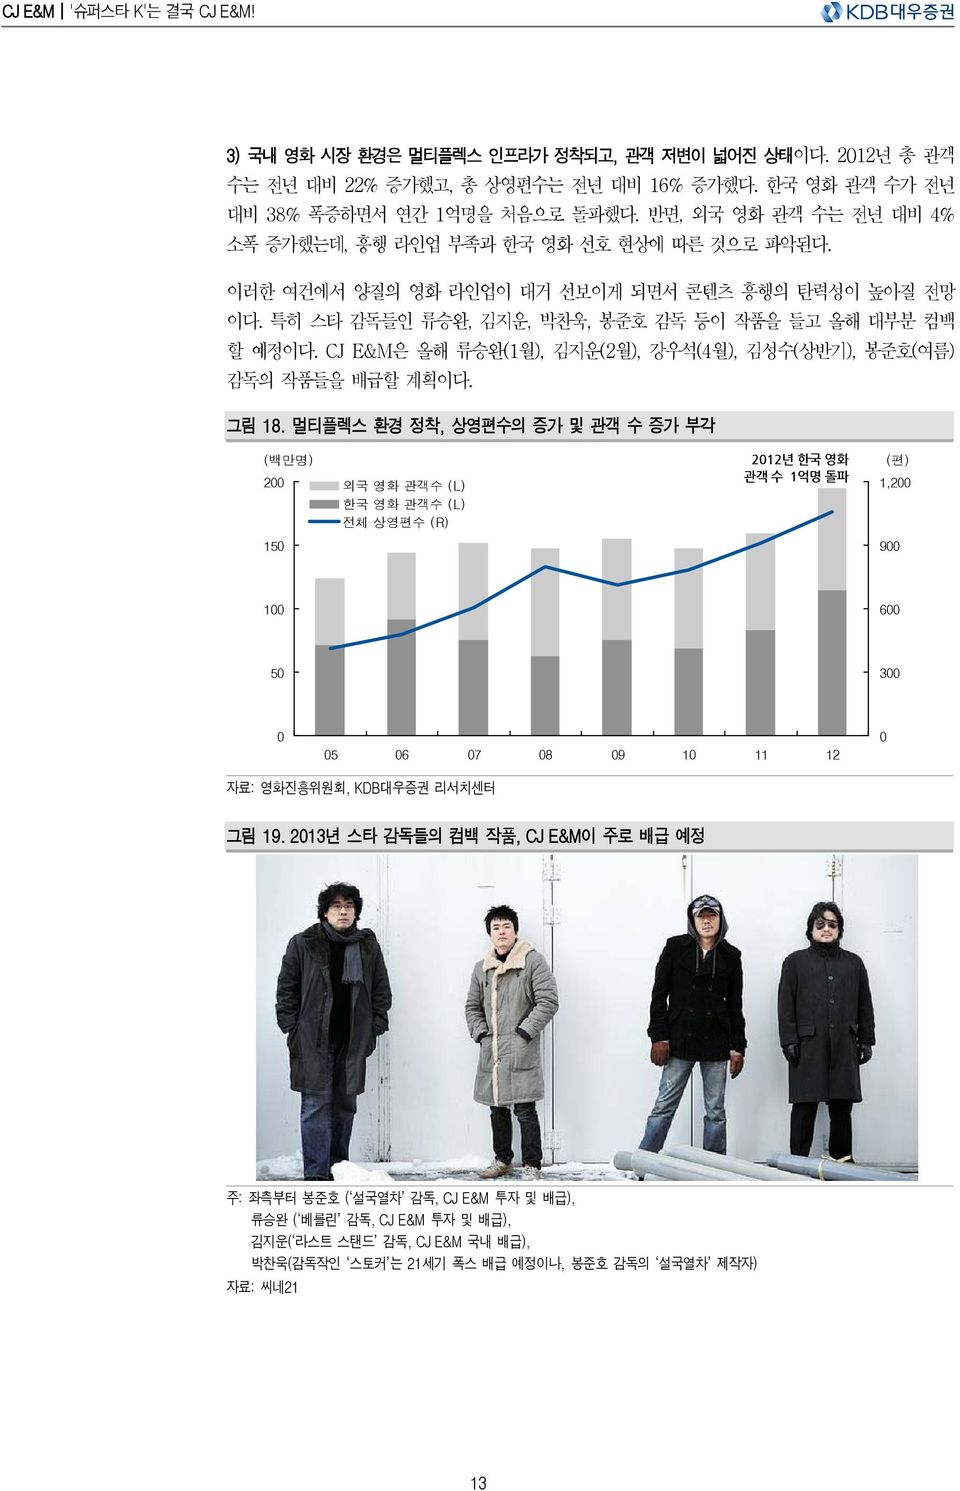 CJ E&M은 올해 류승완(1월), 김지운(2월), 강우석(4월), 김성수(상반기), 봉준호(여름) 감독의 작품들을 배급할 계획이다. 그림 18.